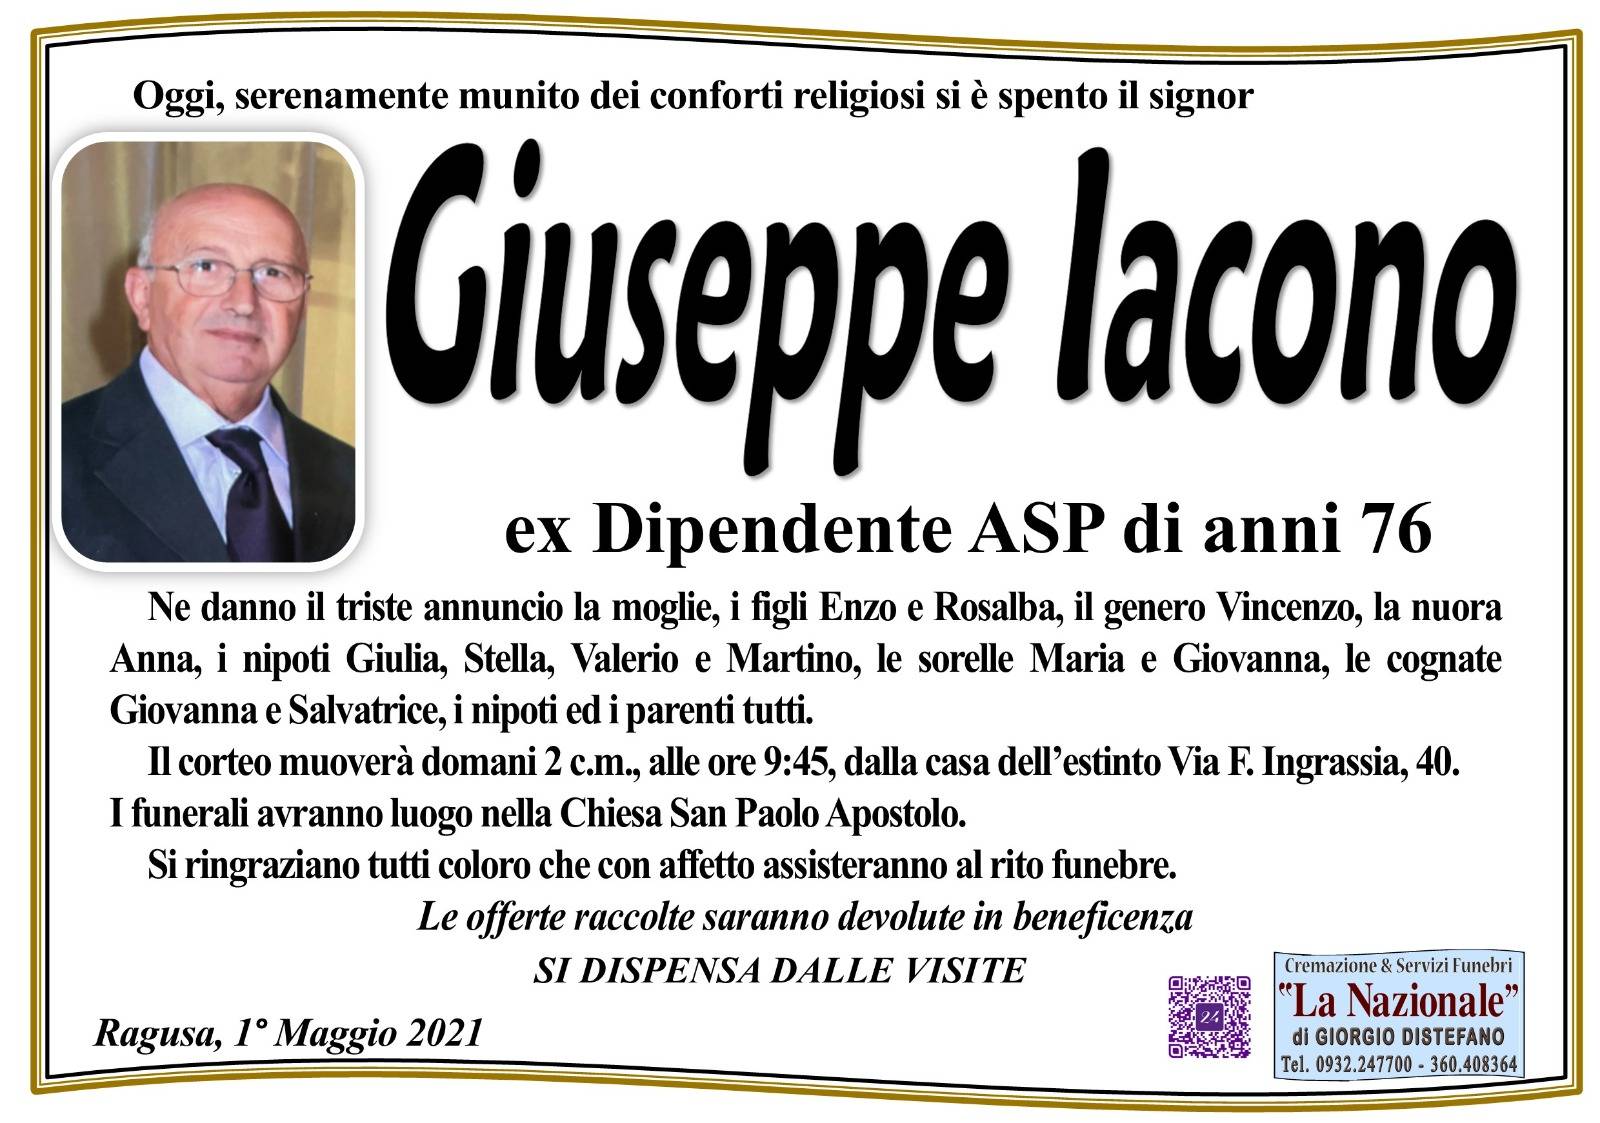 Giuseppe Iacono